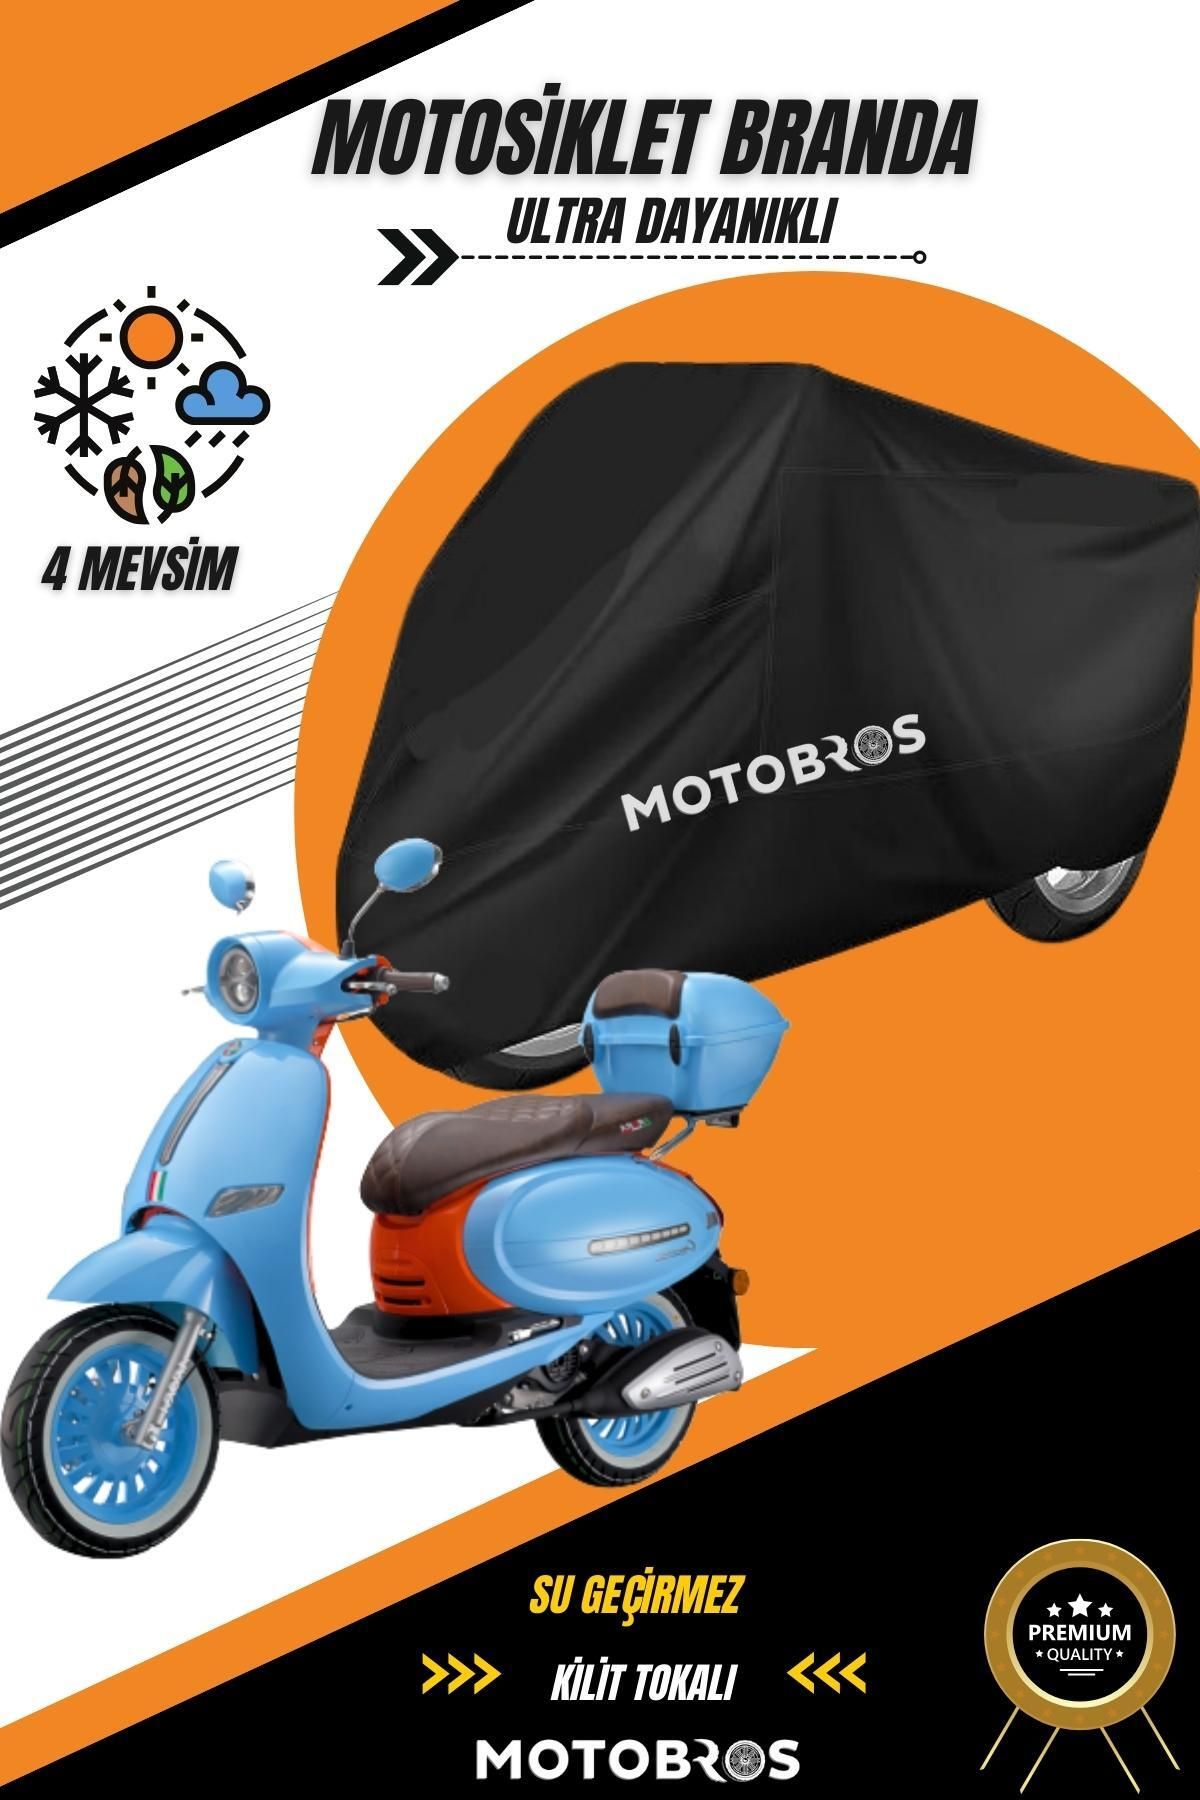 Motobros Arora Cappucino Siyah Su Geçirmez Dayanıklı Motosiklet Brandası (EN KALIN) Kumaş Ömürlük Kullanım